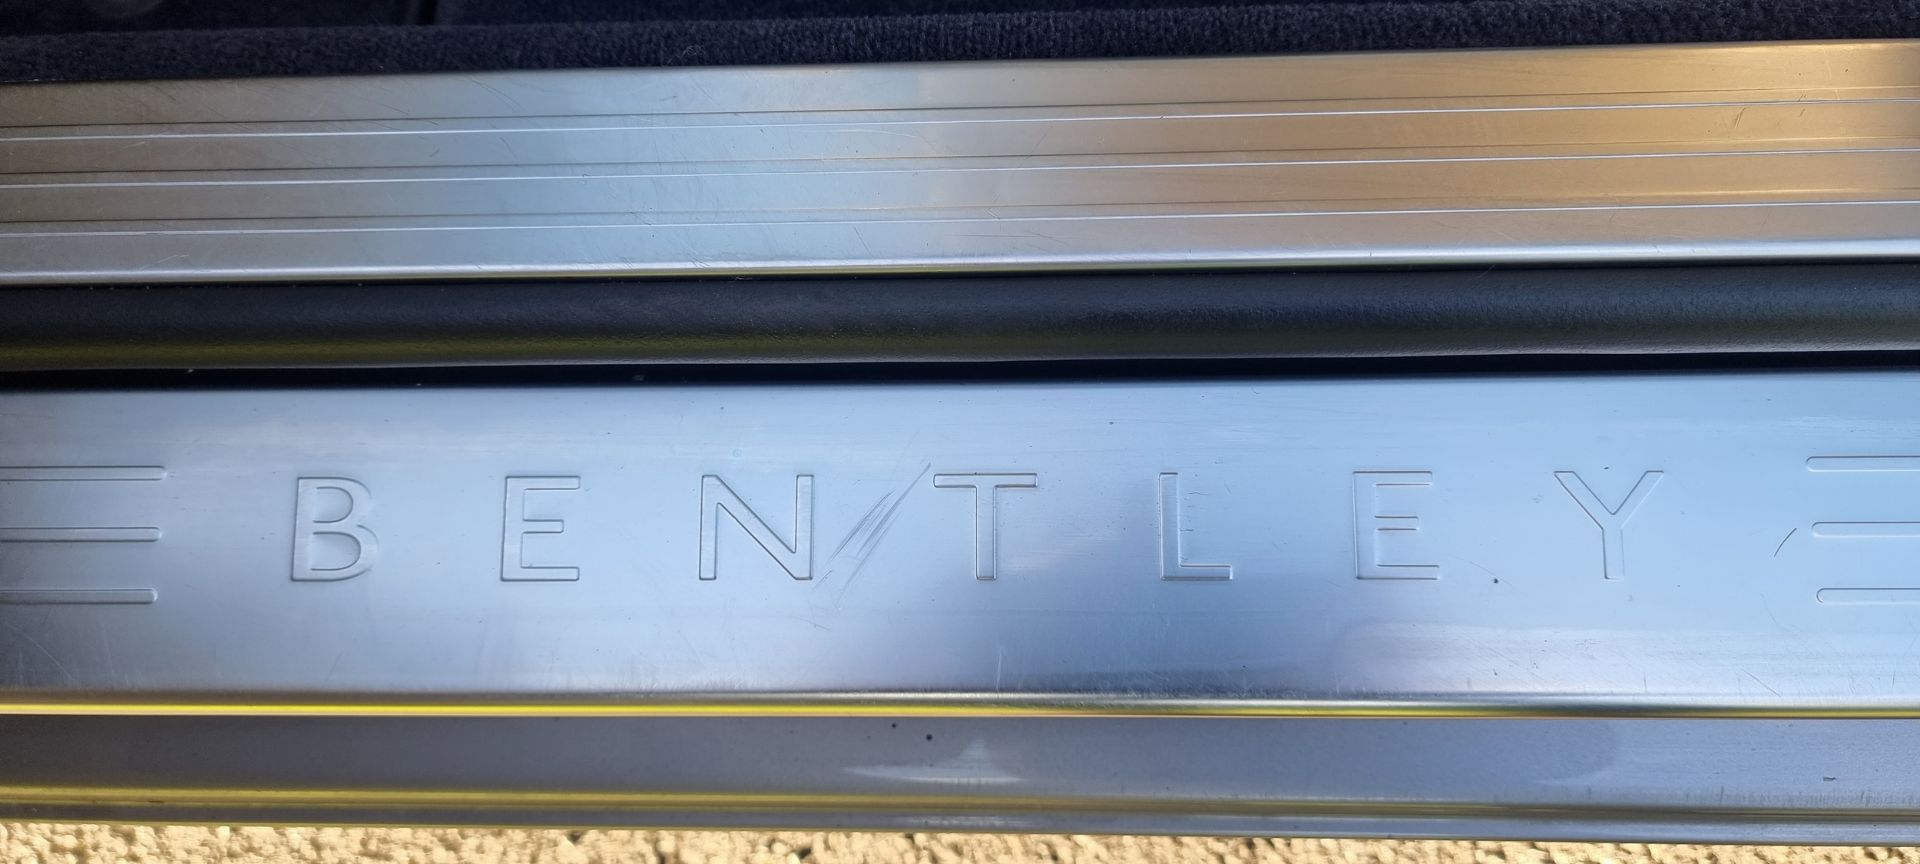 2004 Bentley Continental GT, 5998cc. Registration number LK54 OTV. VIN number SCBCE63W35C026621. - Image 25 of 25